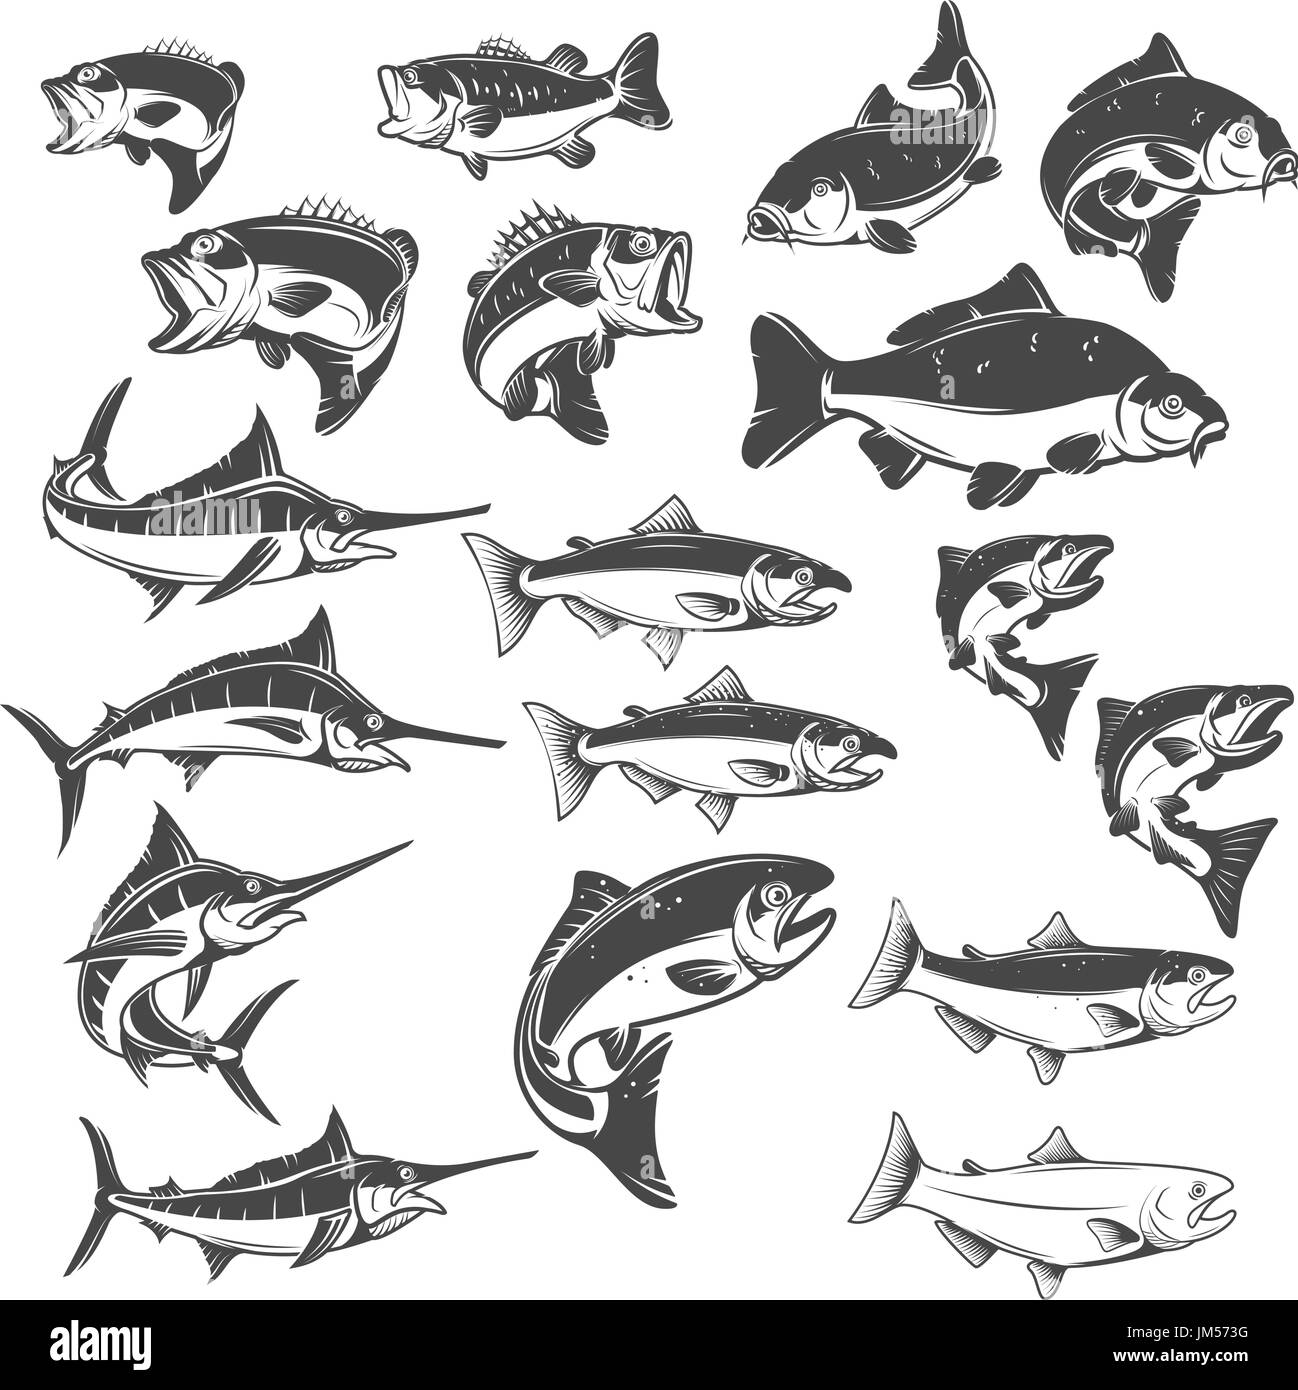 Illustrazioni di pesce su sfondo bianco. Carpe, pesci bass, trota, salmone, pesce spada icone. Gli elementi di design per il logo, l'etichetta, emblema. Illustrazione Vettoriale Illustrazione Vettoriale